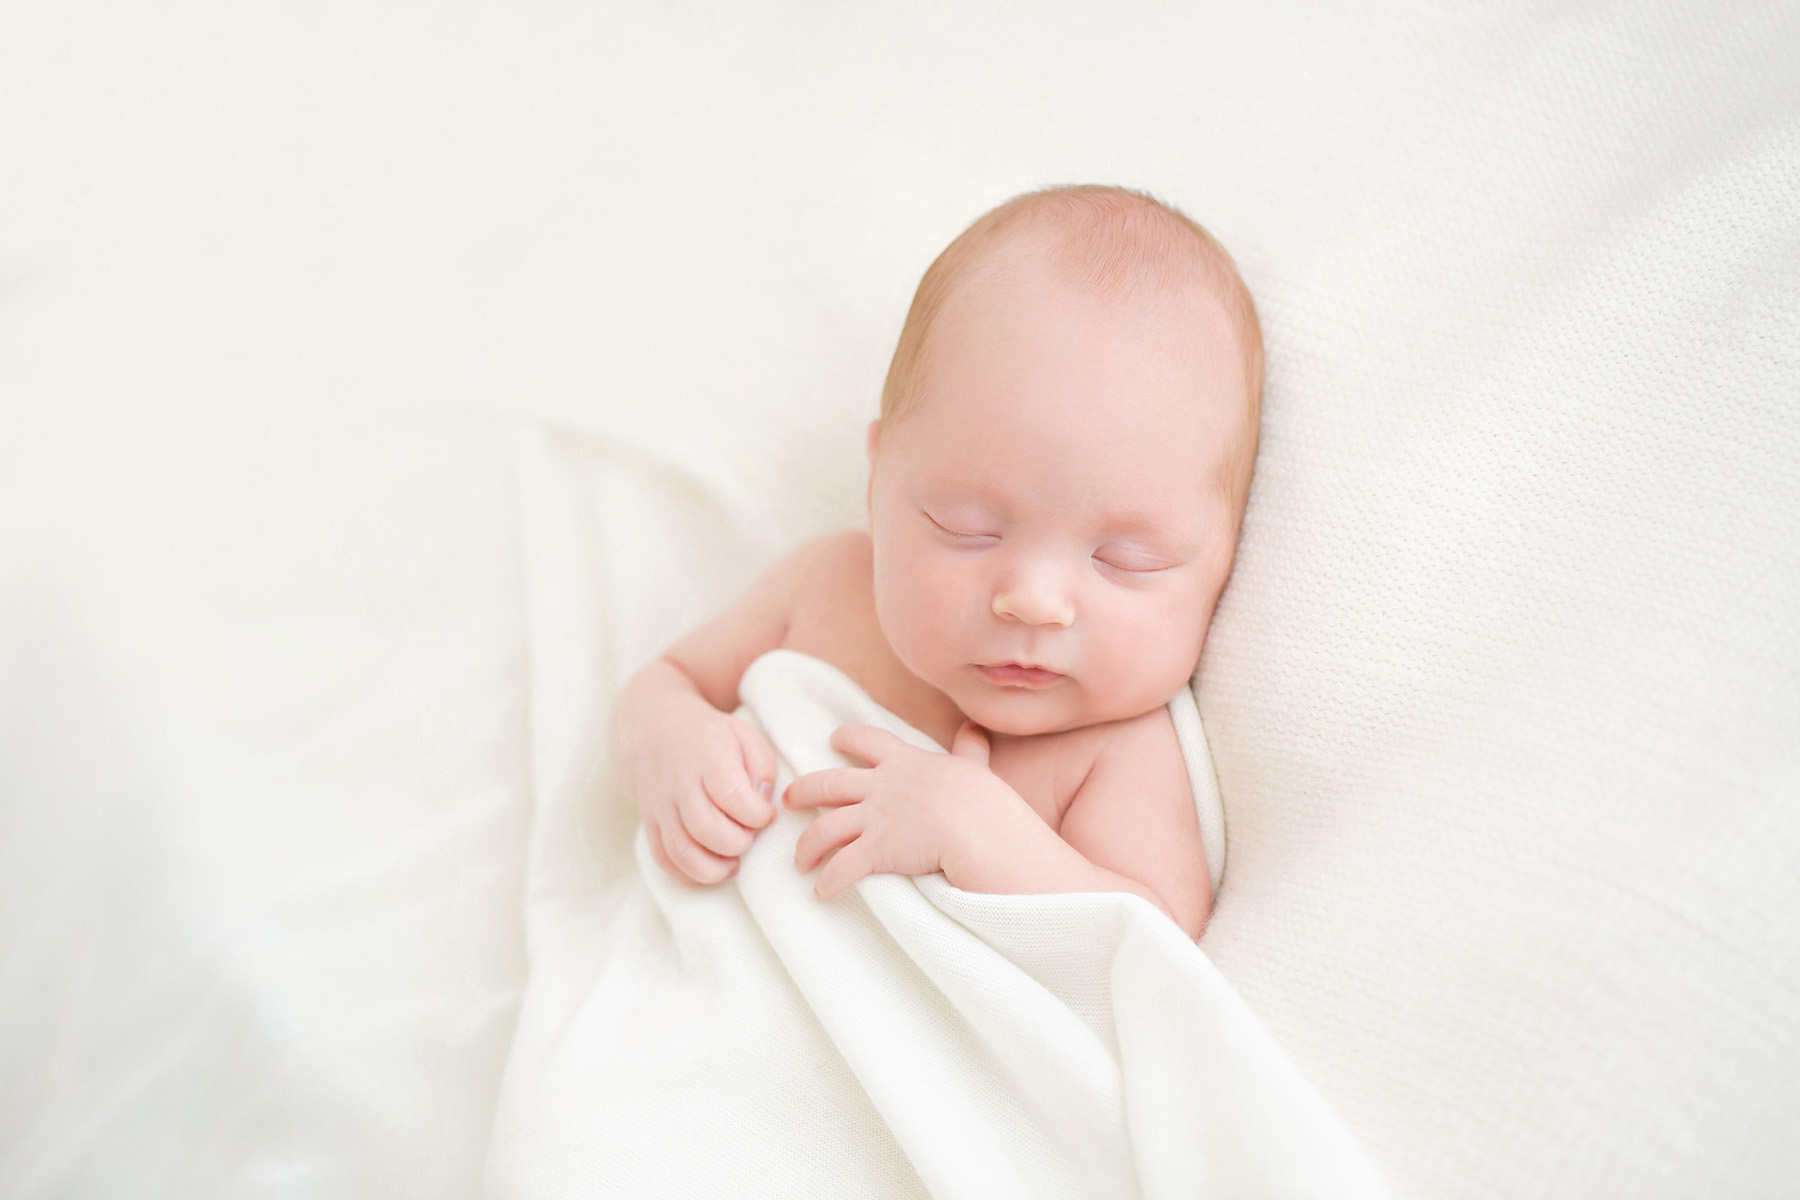 Louisville KY Newborn Photographer | Julie Brock Photography | newborn baby photography studio in Louisville KY | maternity photographer Louisville KY.jpg